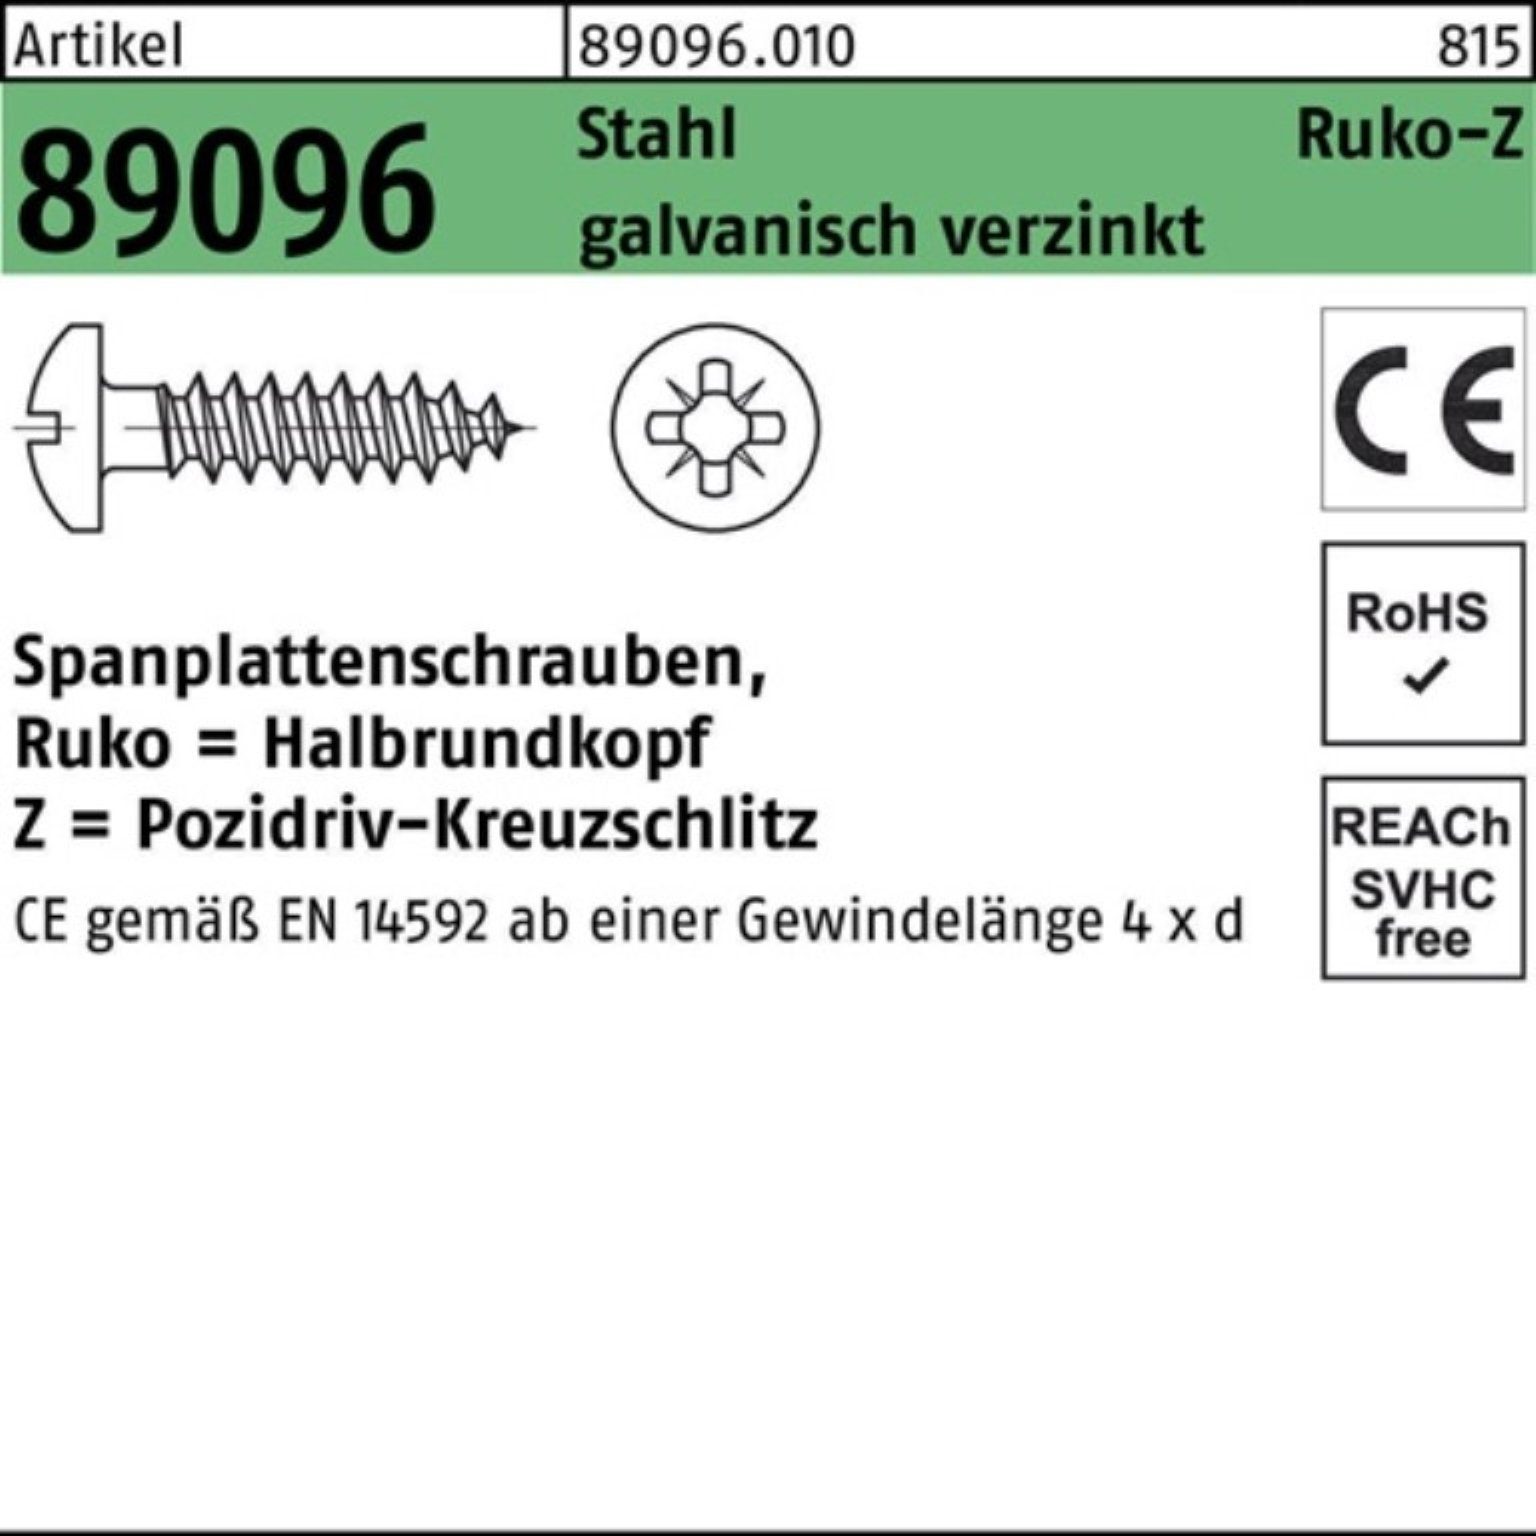 Reyher Spanplattenschraube 1000er R Spanplattenschraube PZ HAKO Pack galv.verz 3x16-Z 89096 Stahl